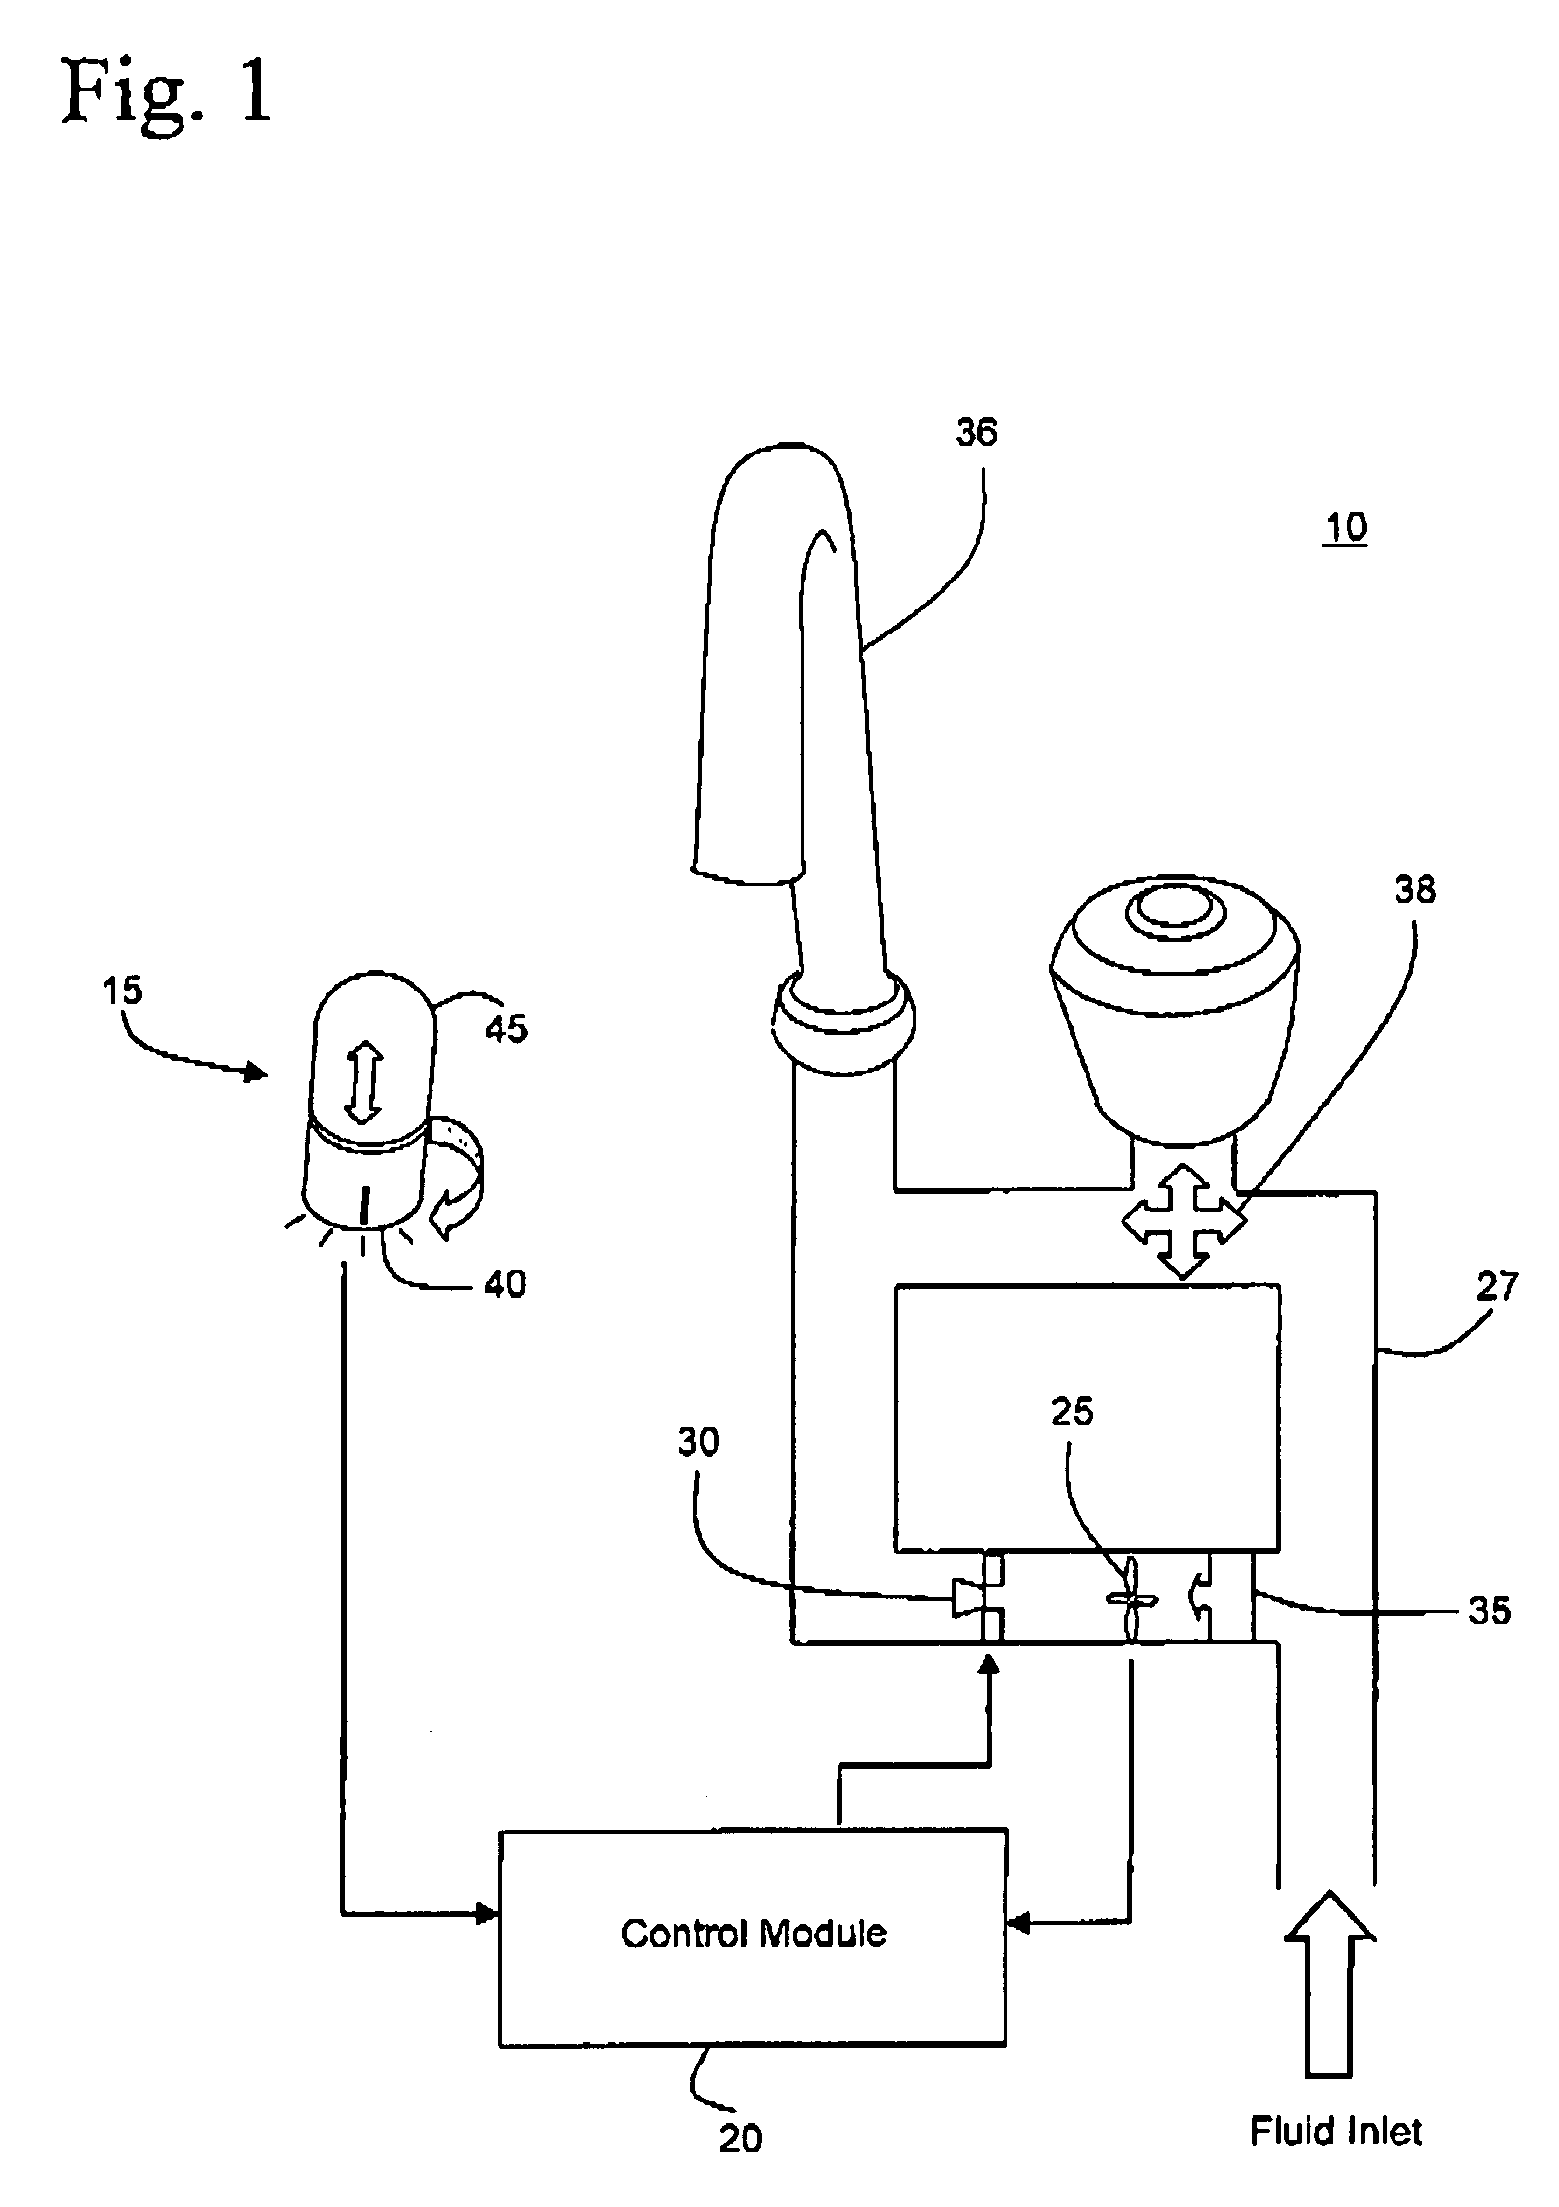 Volumetric control apparatus for fluid dispensing